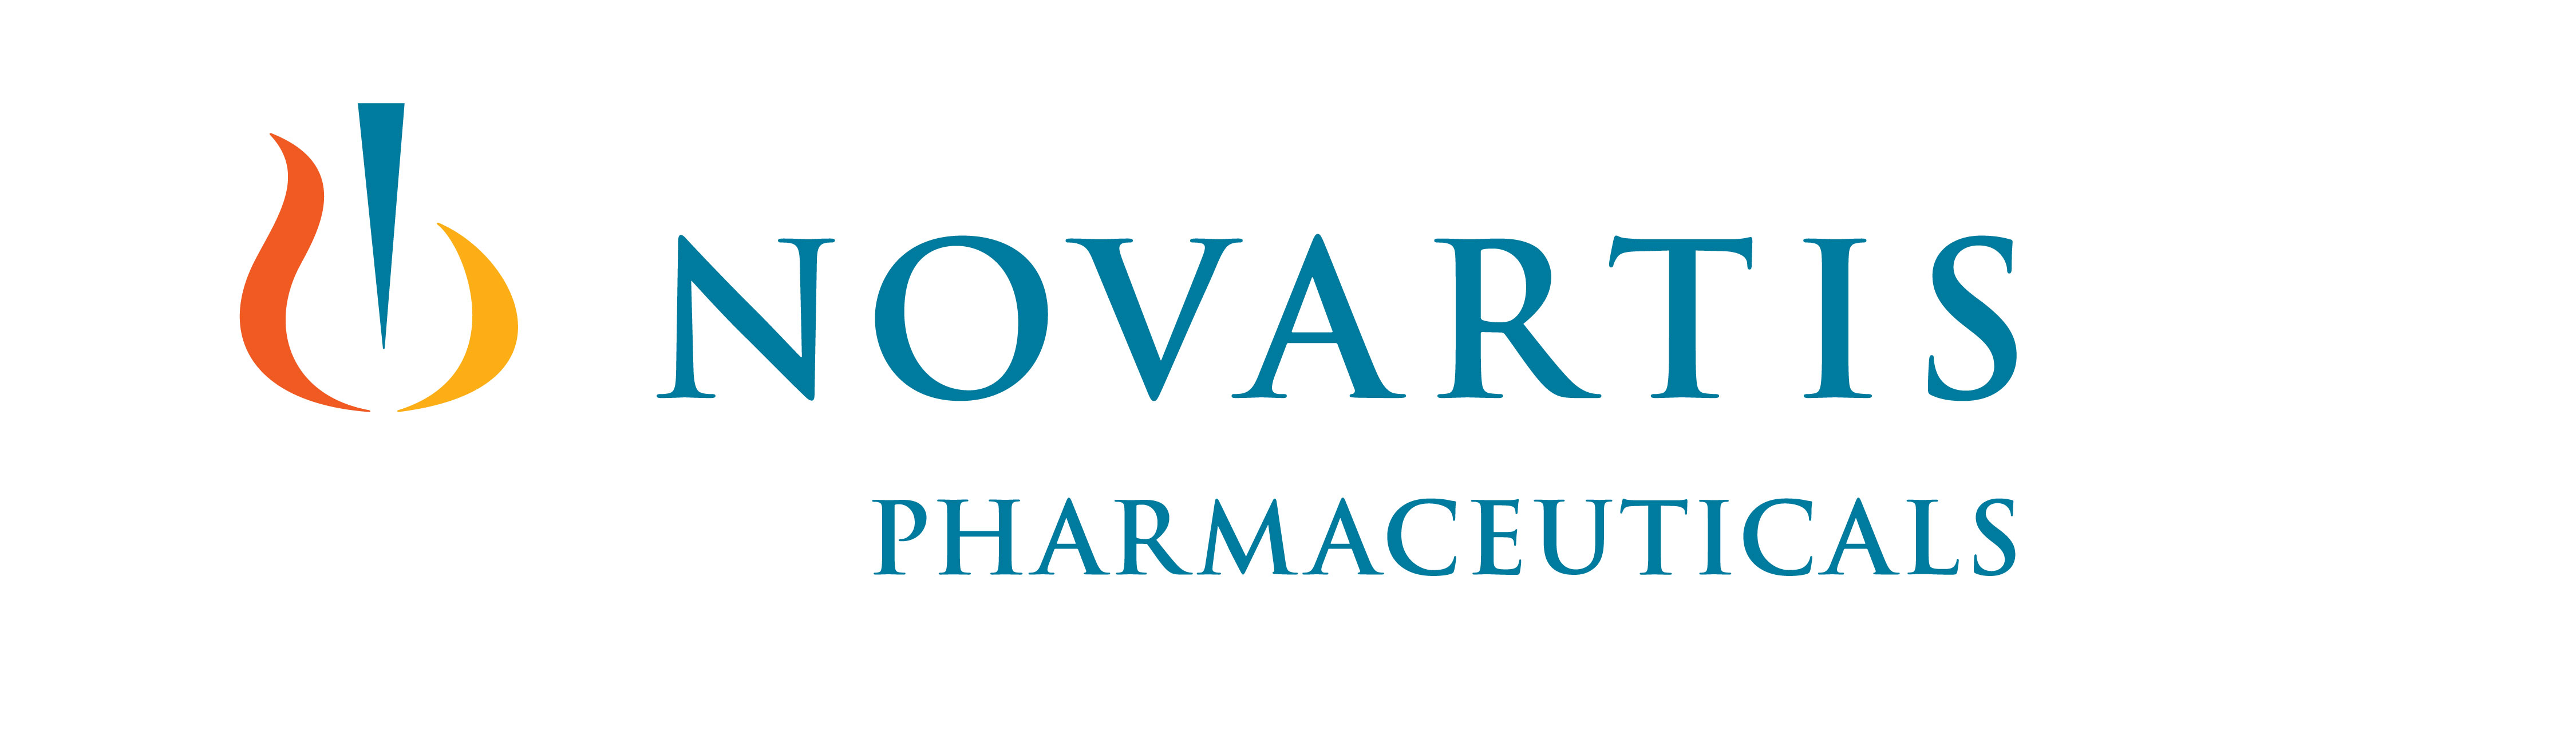 Novartis 2014